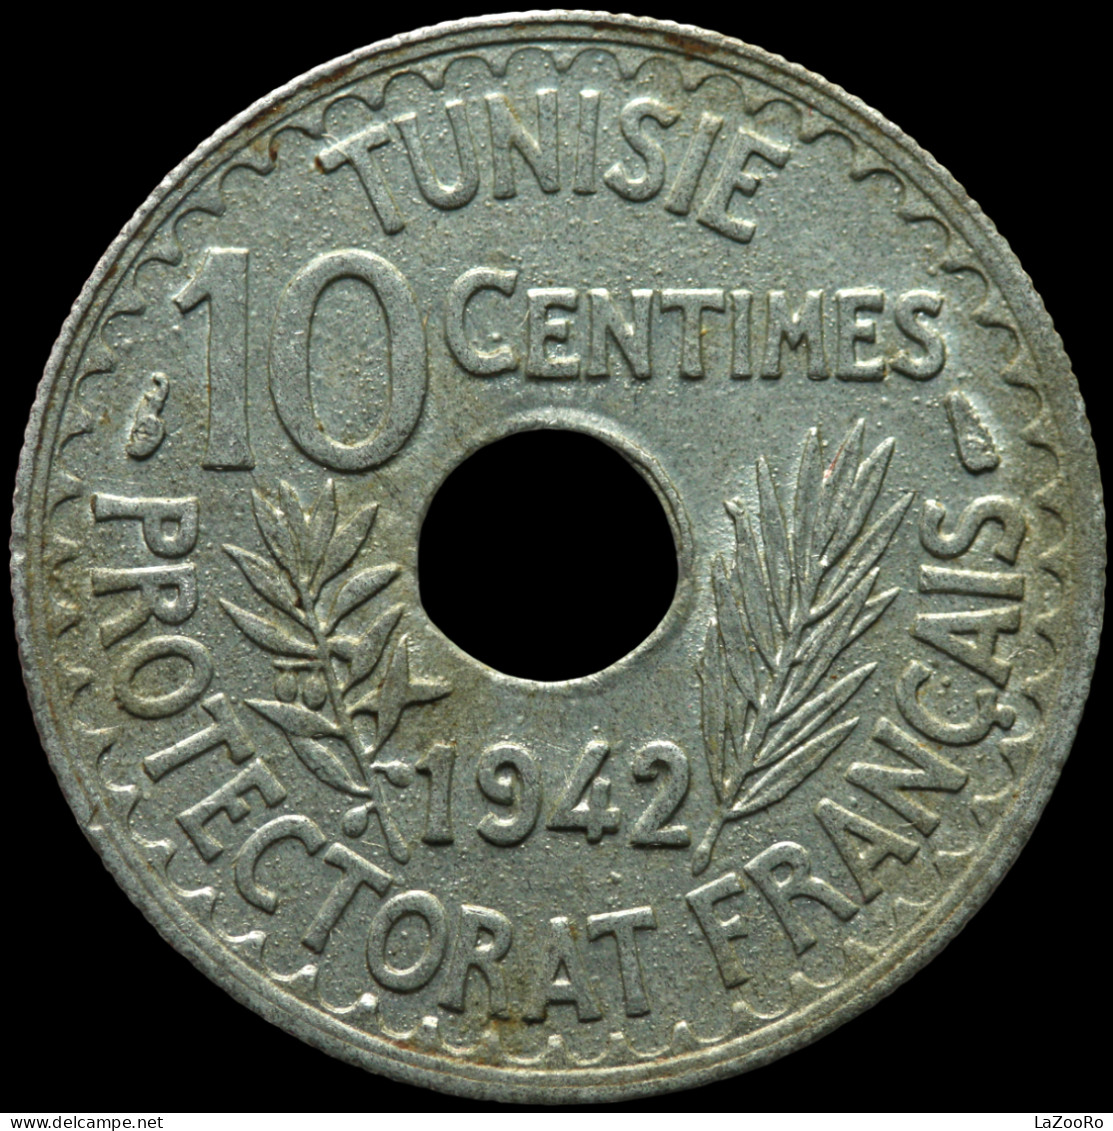 LaZooRo: Tunisia 10 Centimes 1942 UNC - Tunisia